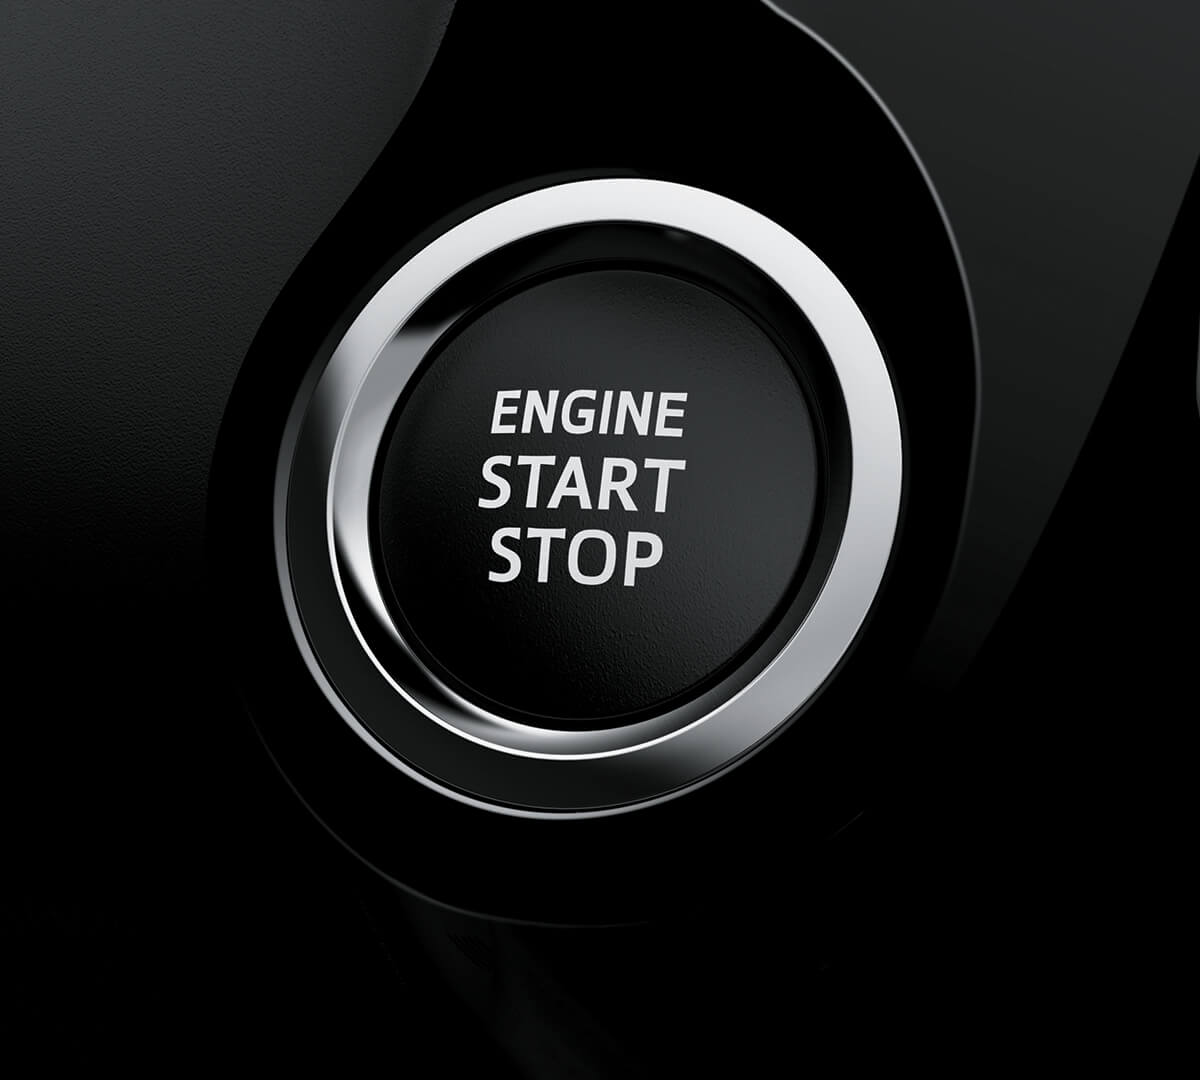 Encendido por botón.
Girar la llave quedó en el pasado. Empieza tus aventuras con solo presionar un botón. (Disponible según versión).